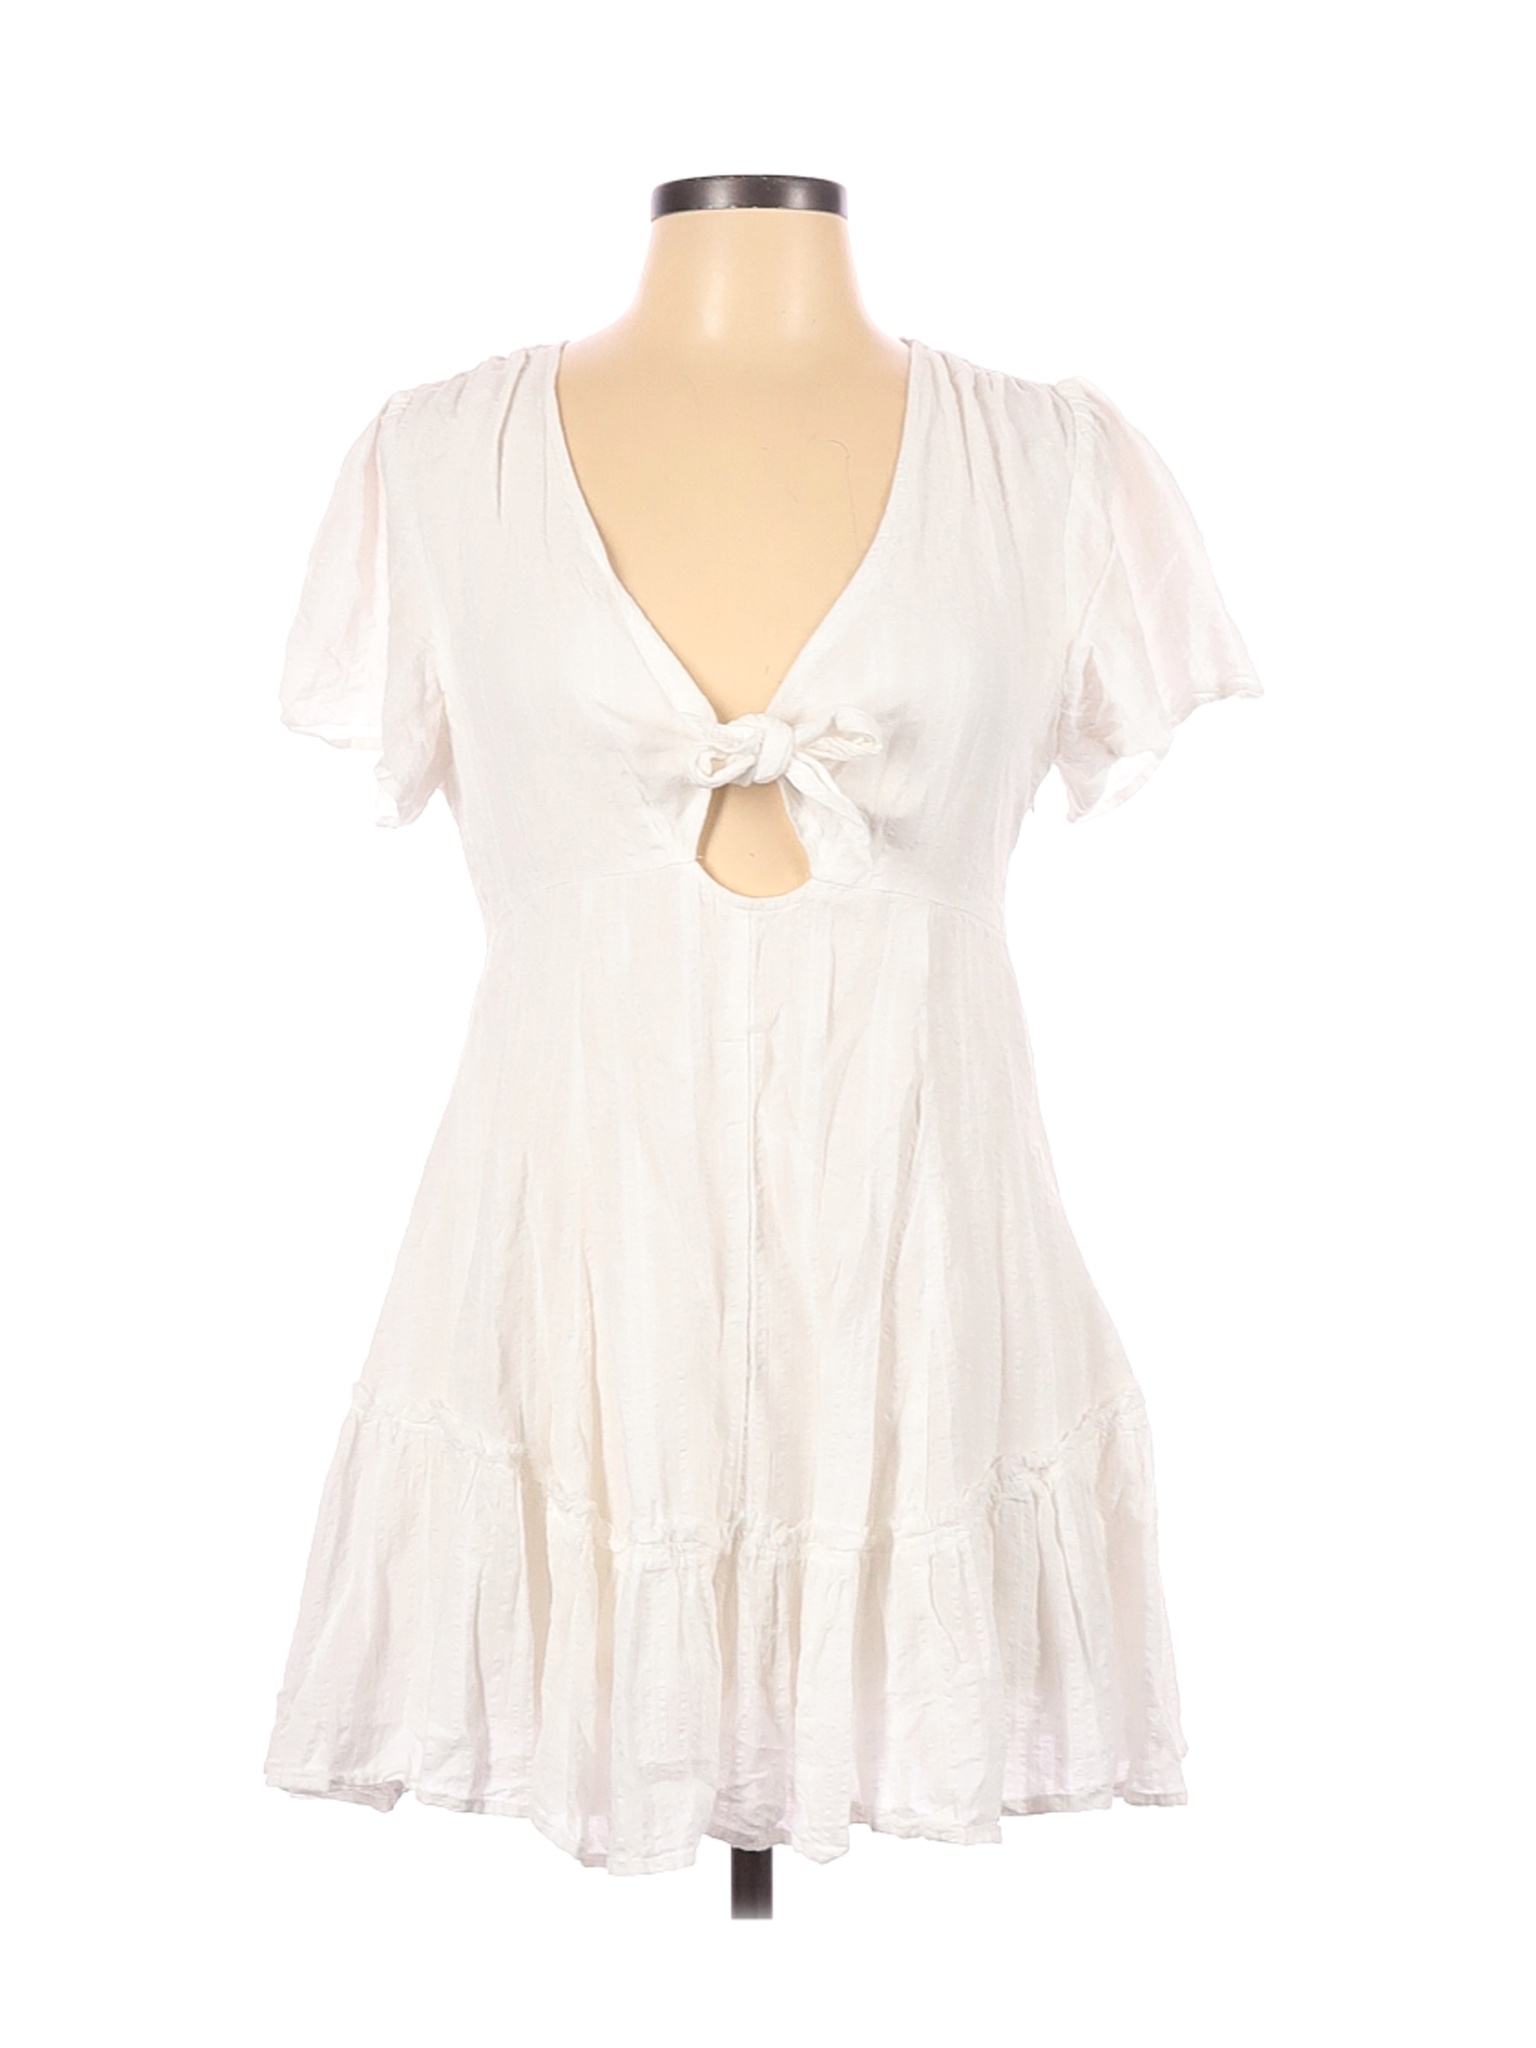 Cotton Candy LA Women White Casual Dress L | eBay